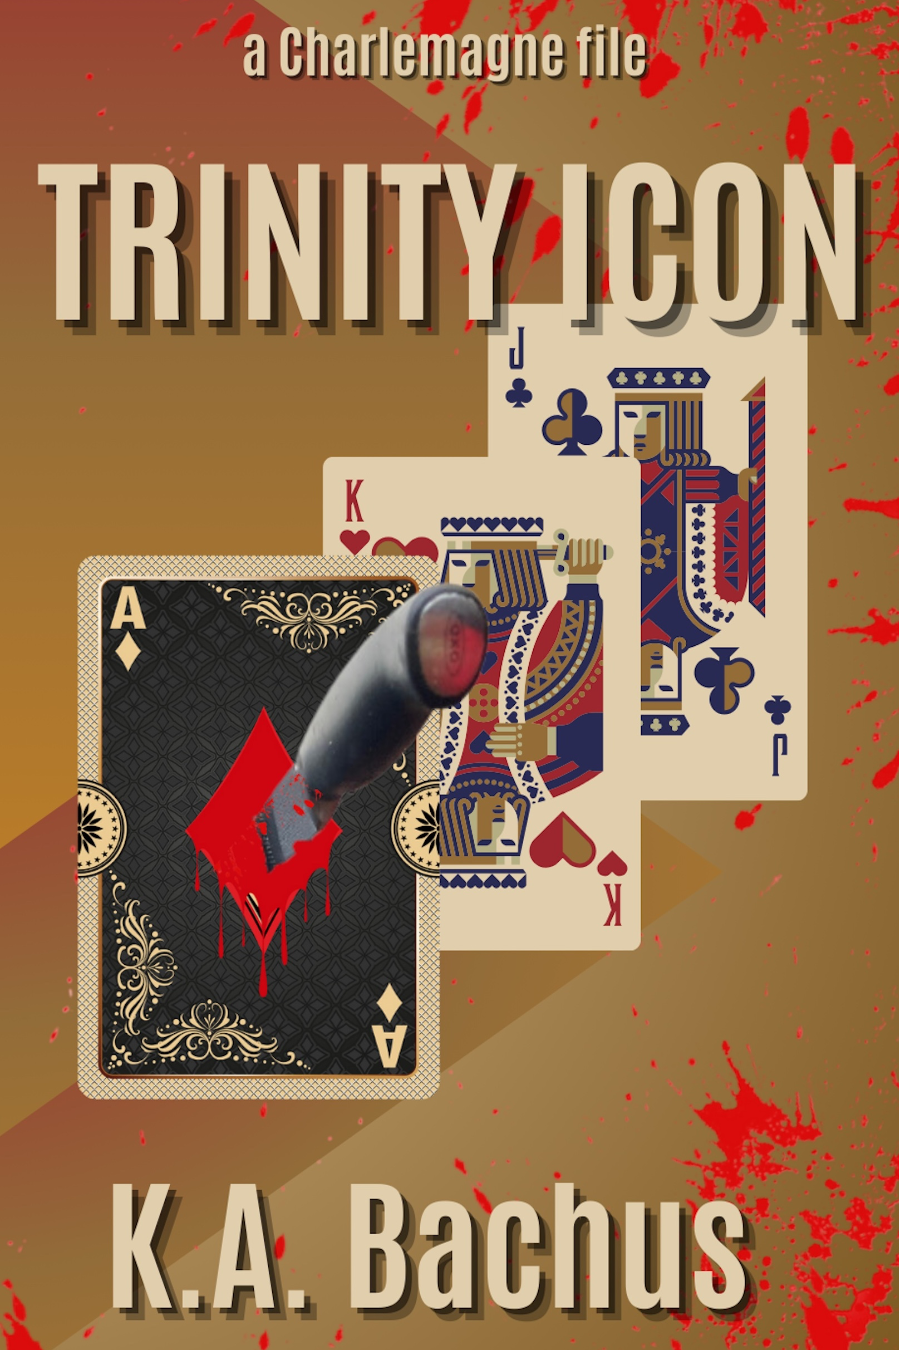 Trinity Icon Audiobook Image